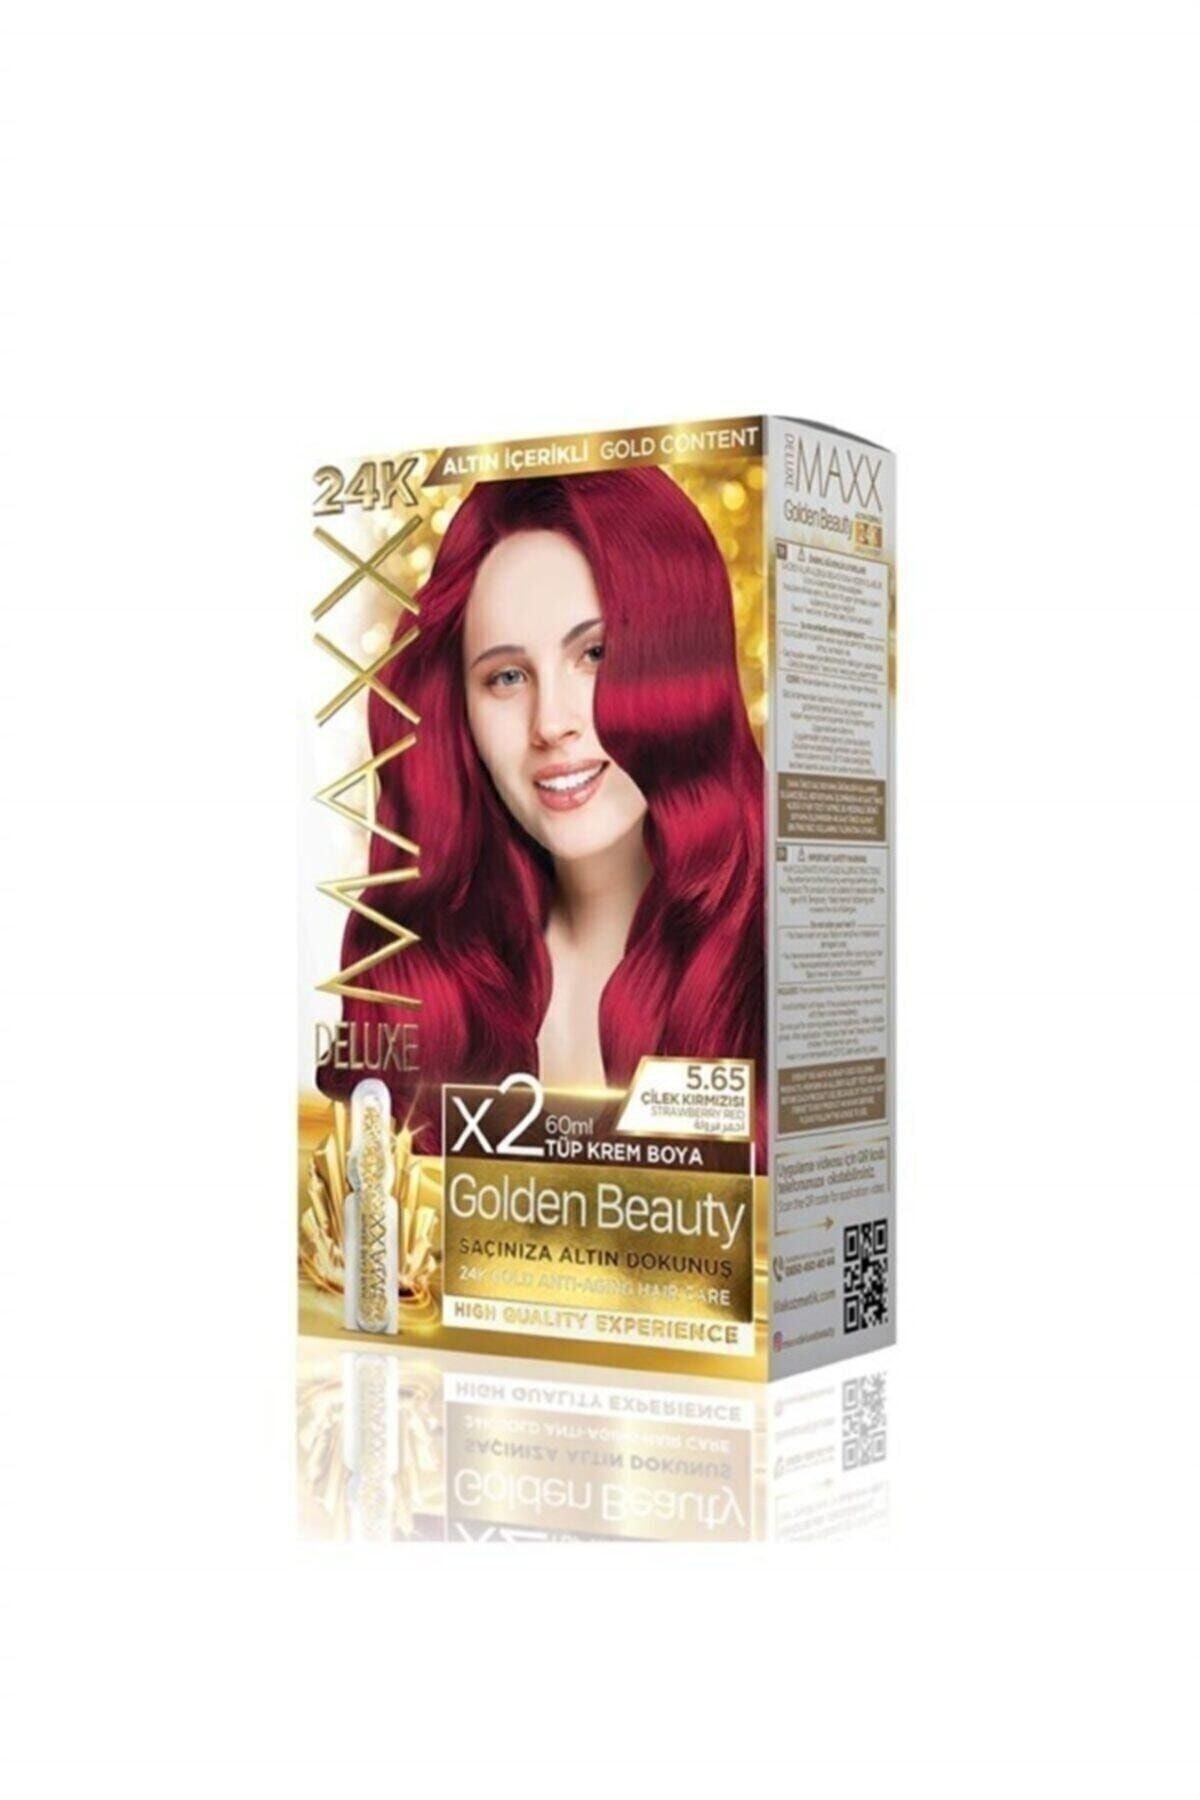 MAXX DELUXE Golden 5.65 Çilek Kırmızısı 24k Altın Içerikli Saç Boyası